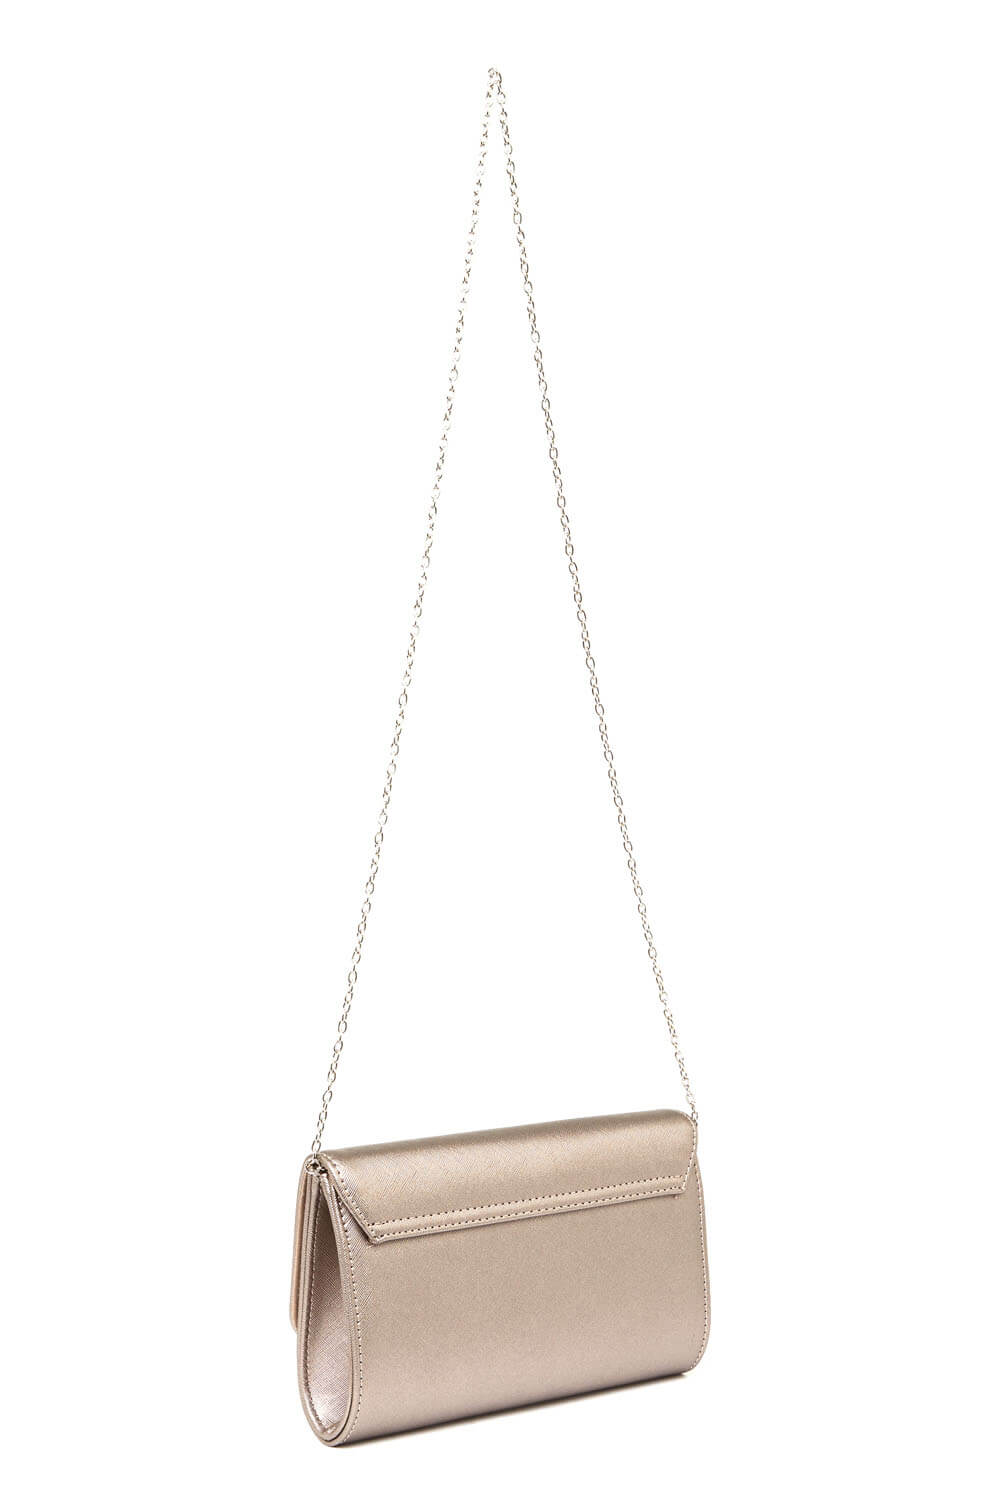 Mink Foldover Metal Bar Clutch Bag, Image 4 of 5